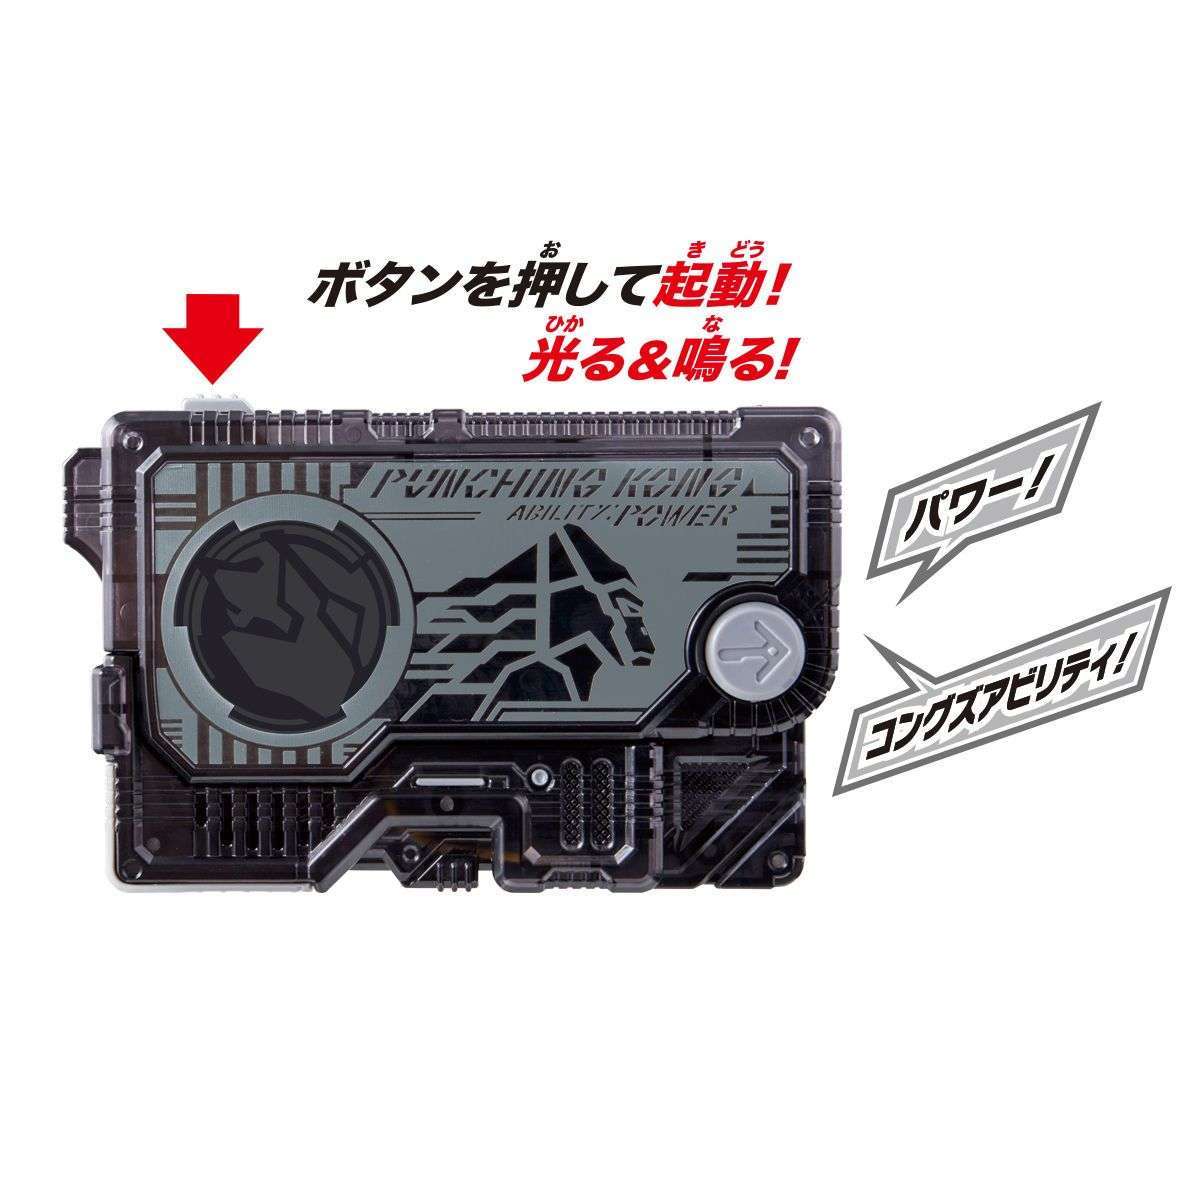 [LOOSE] Kamen Rider 01: DX Punching Kong Progrise Key | CSTOYS INTERNATIONAL